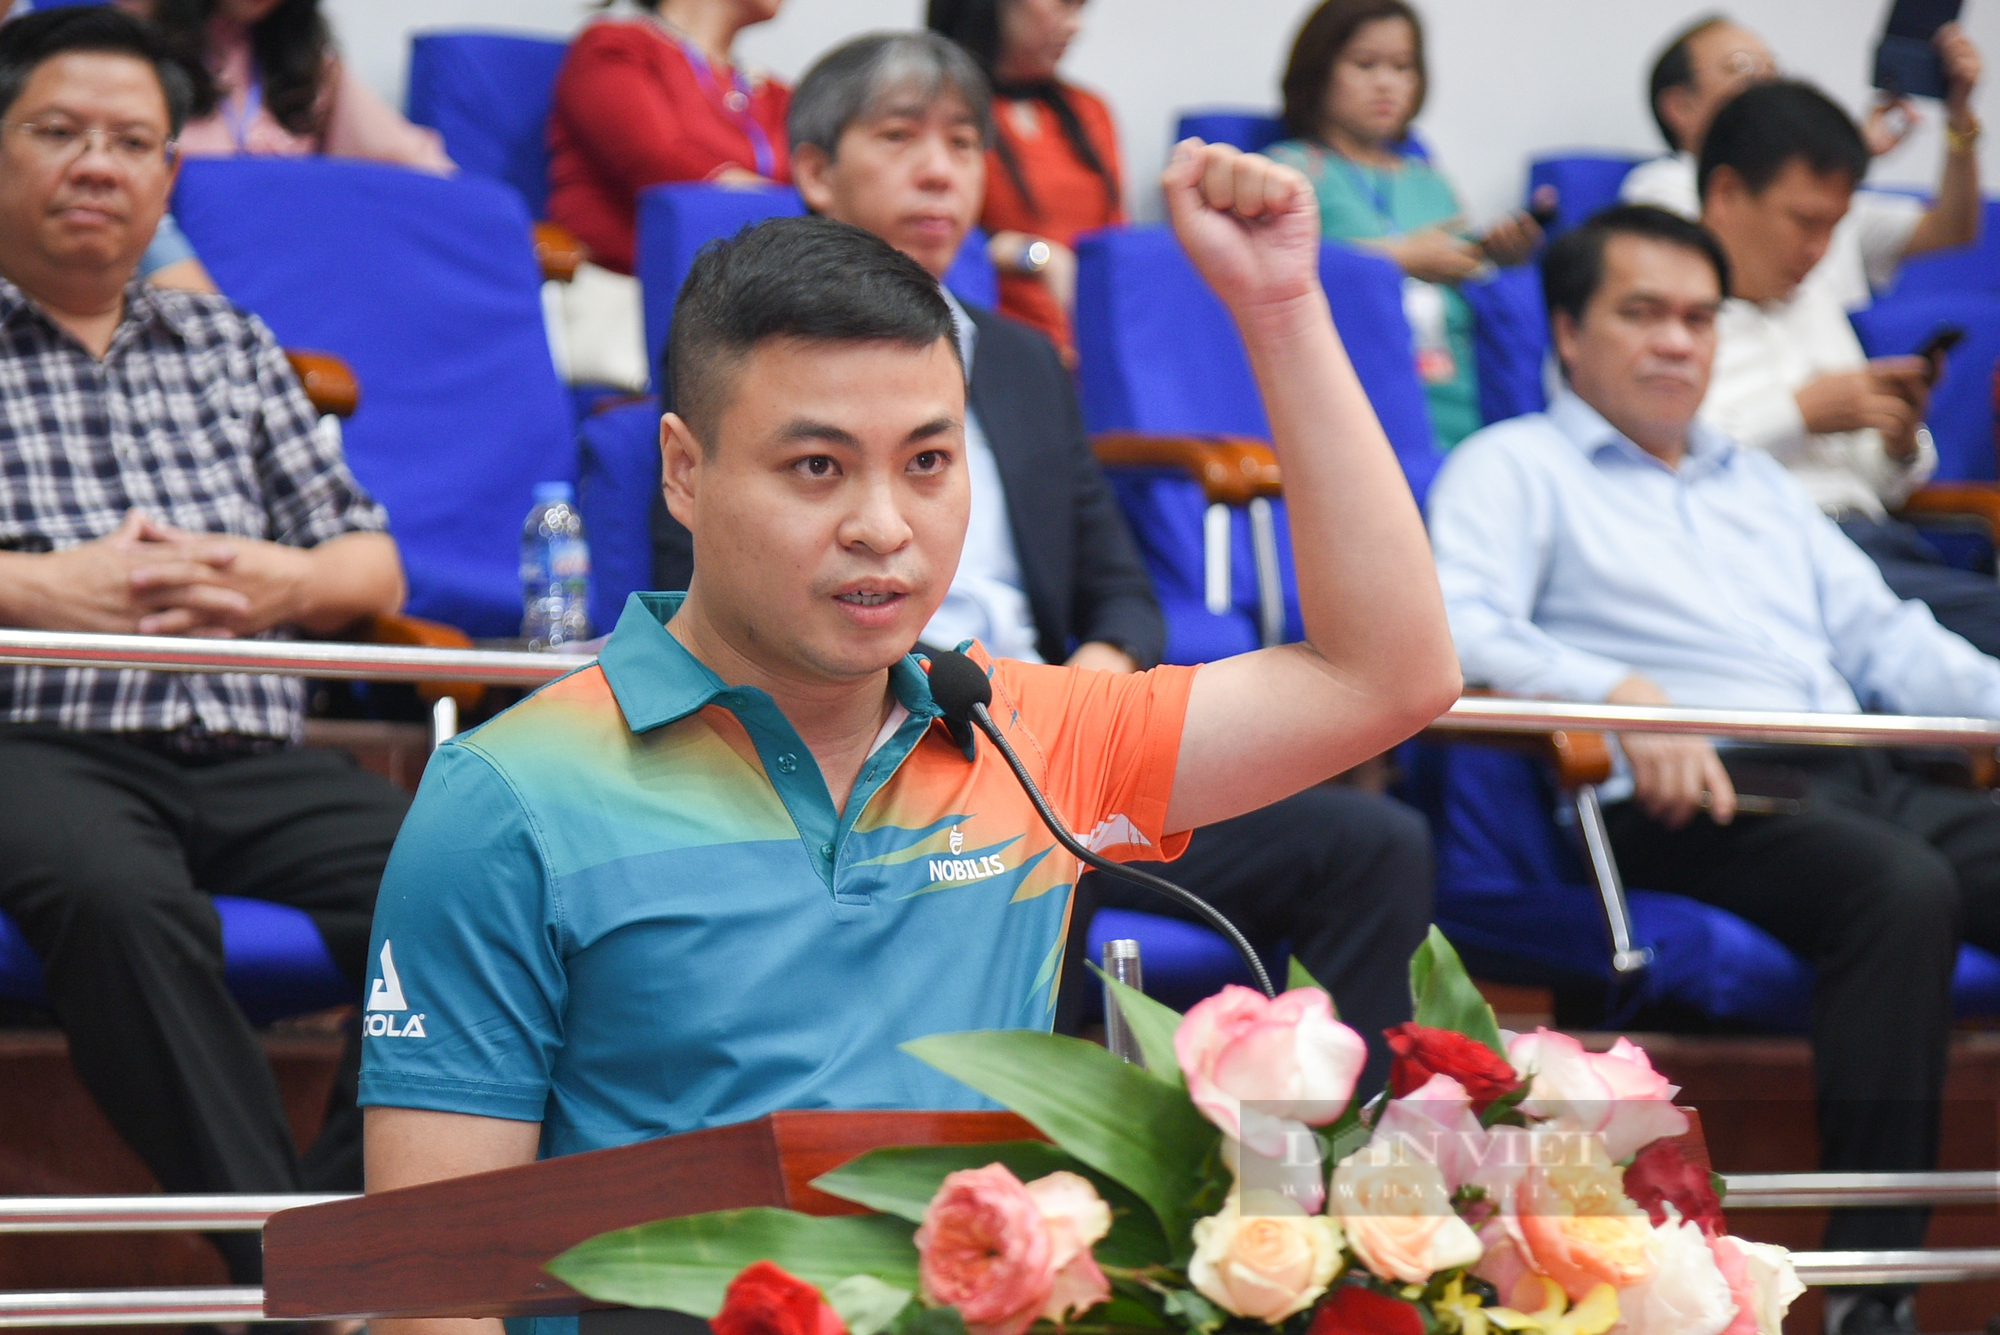 Báo NTNN/Dân Việt giành chiến thắng đầu tiên tại Giải Bóng bàn Cúp Hội nhà báo Việt Nam lần thứ XV - Ảnh 4.